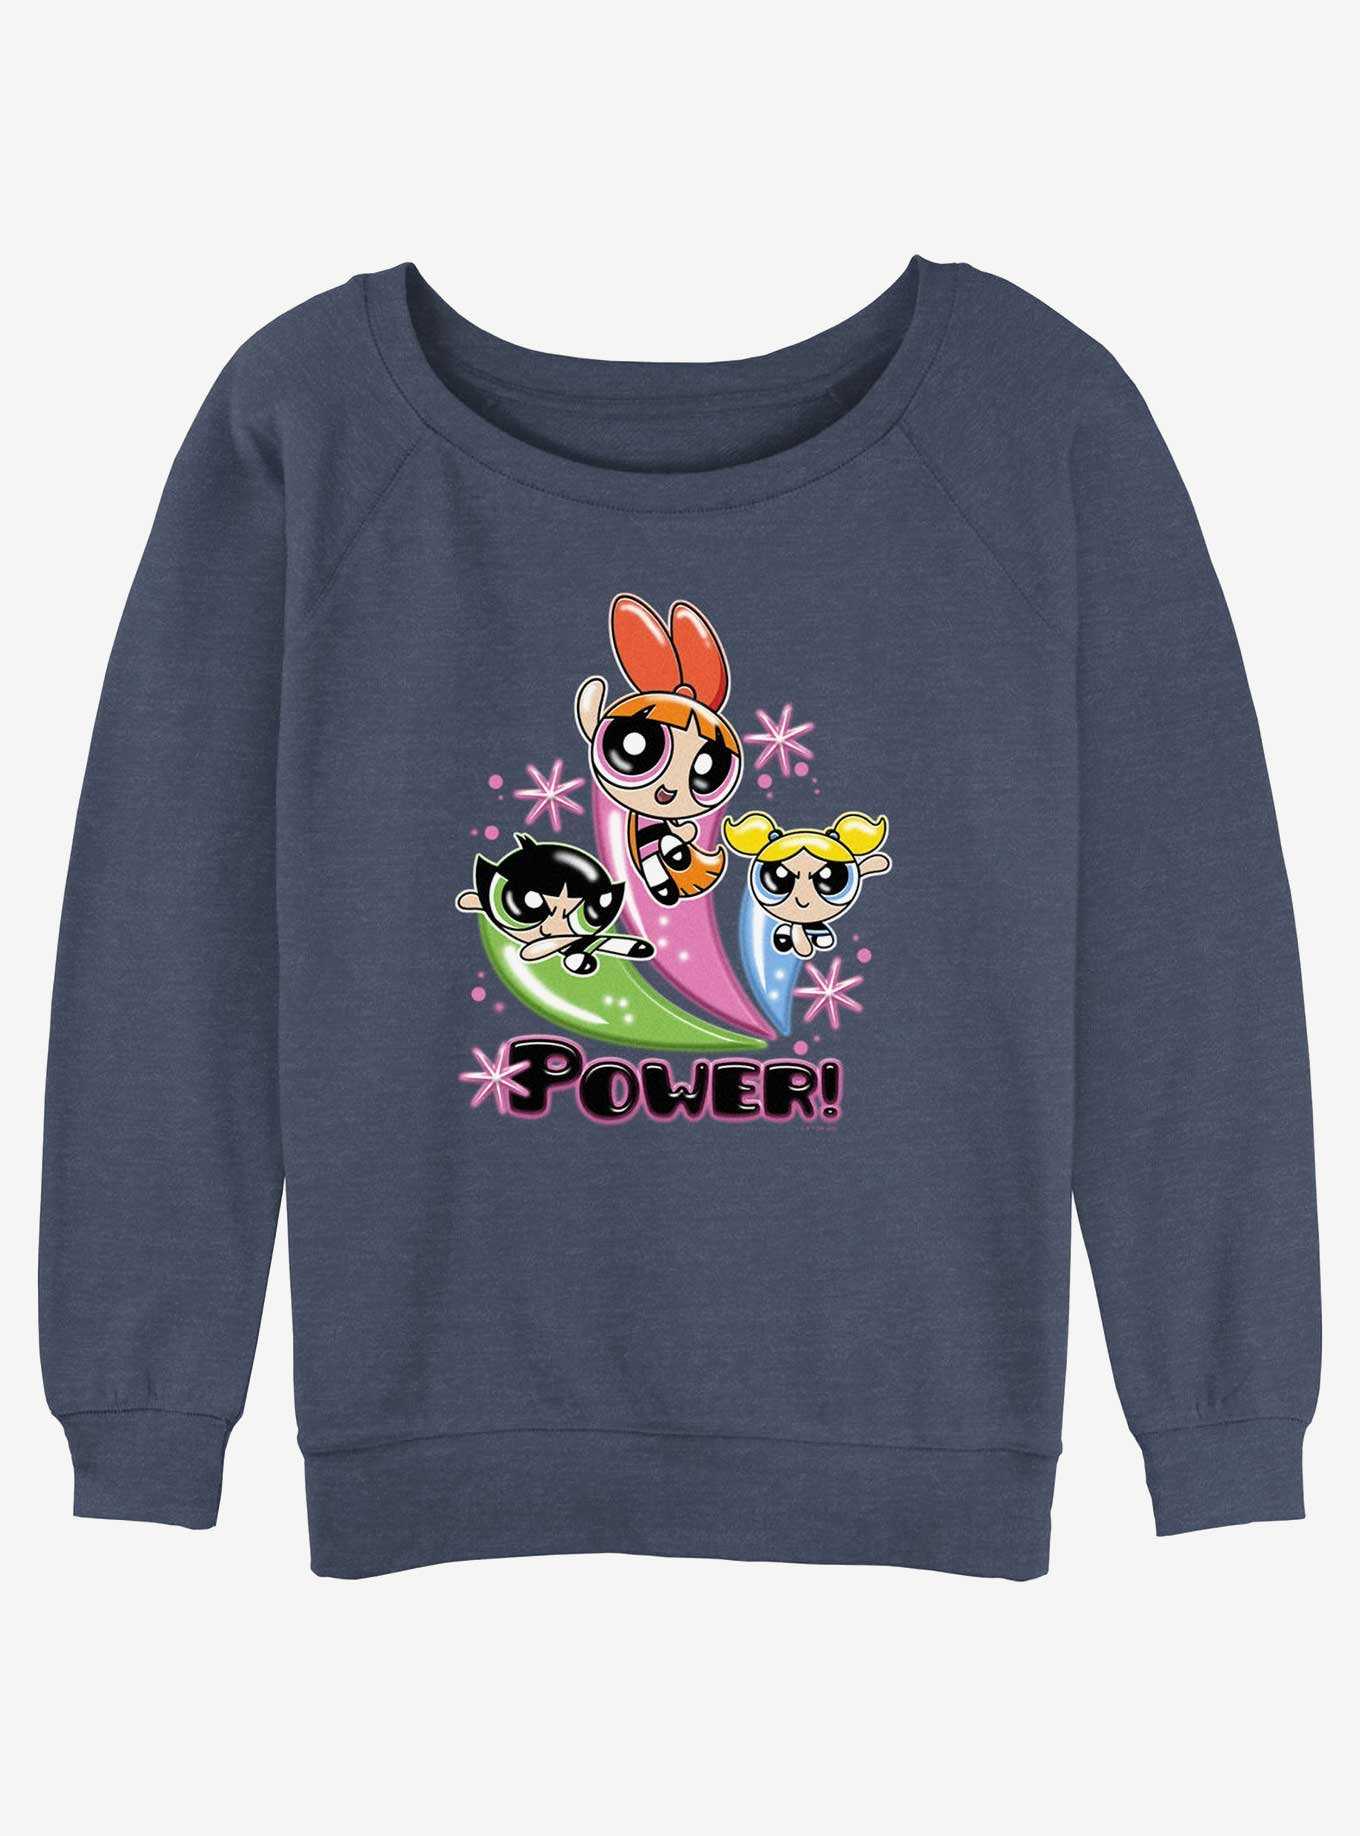 Cartoon Network The Powerpuff Girls Power Pose Girls Slouchy Sweatshirt, , hi-res